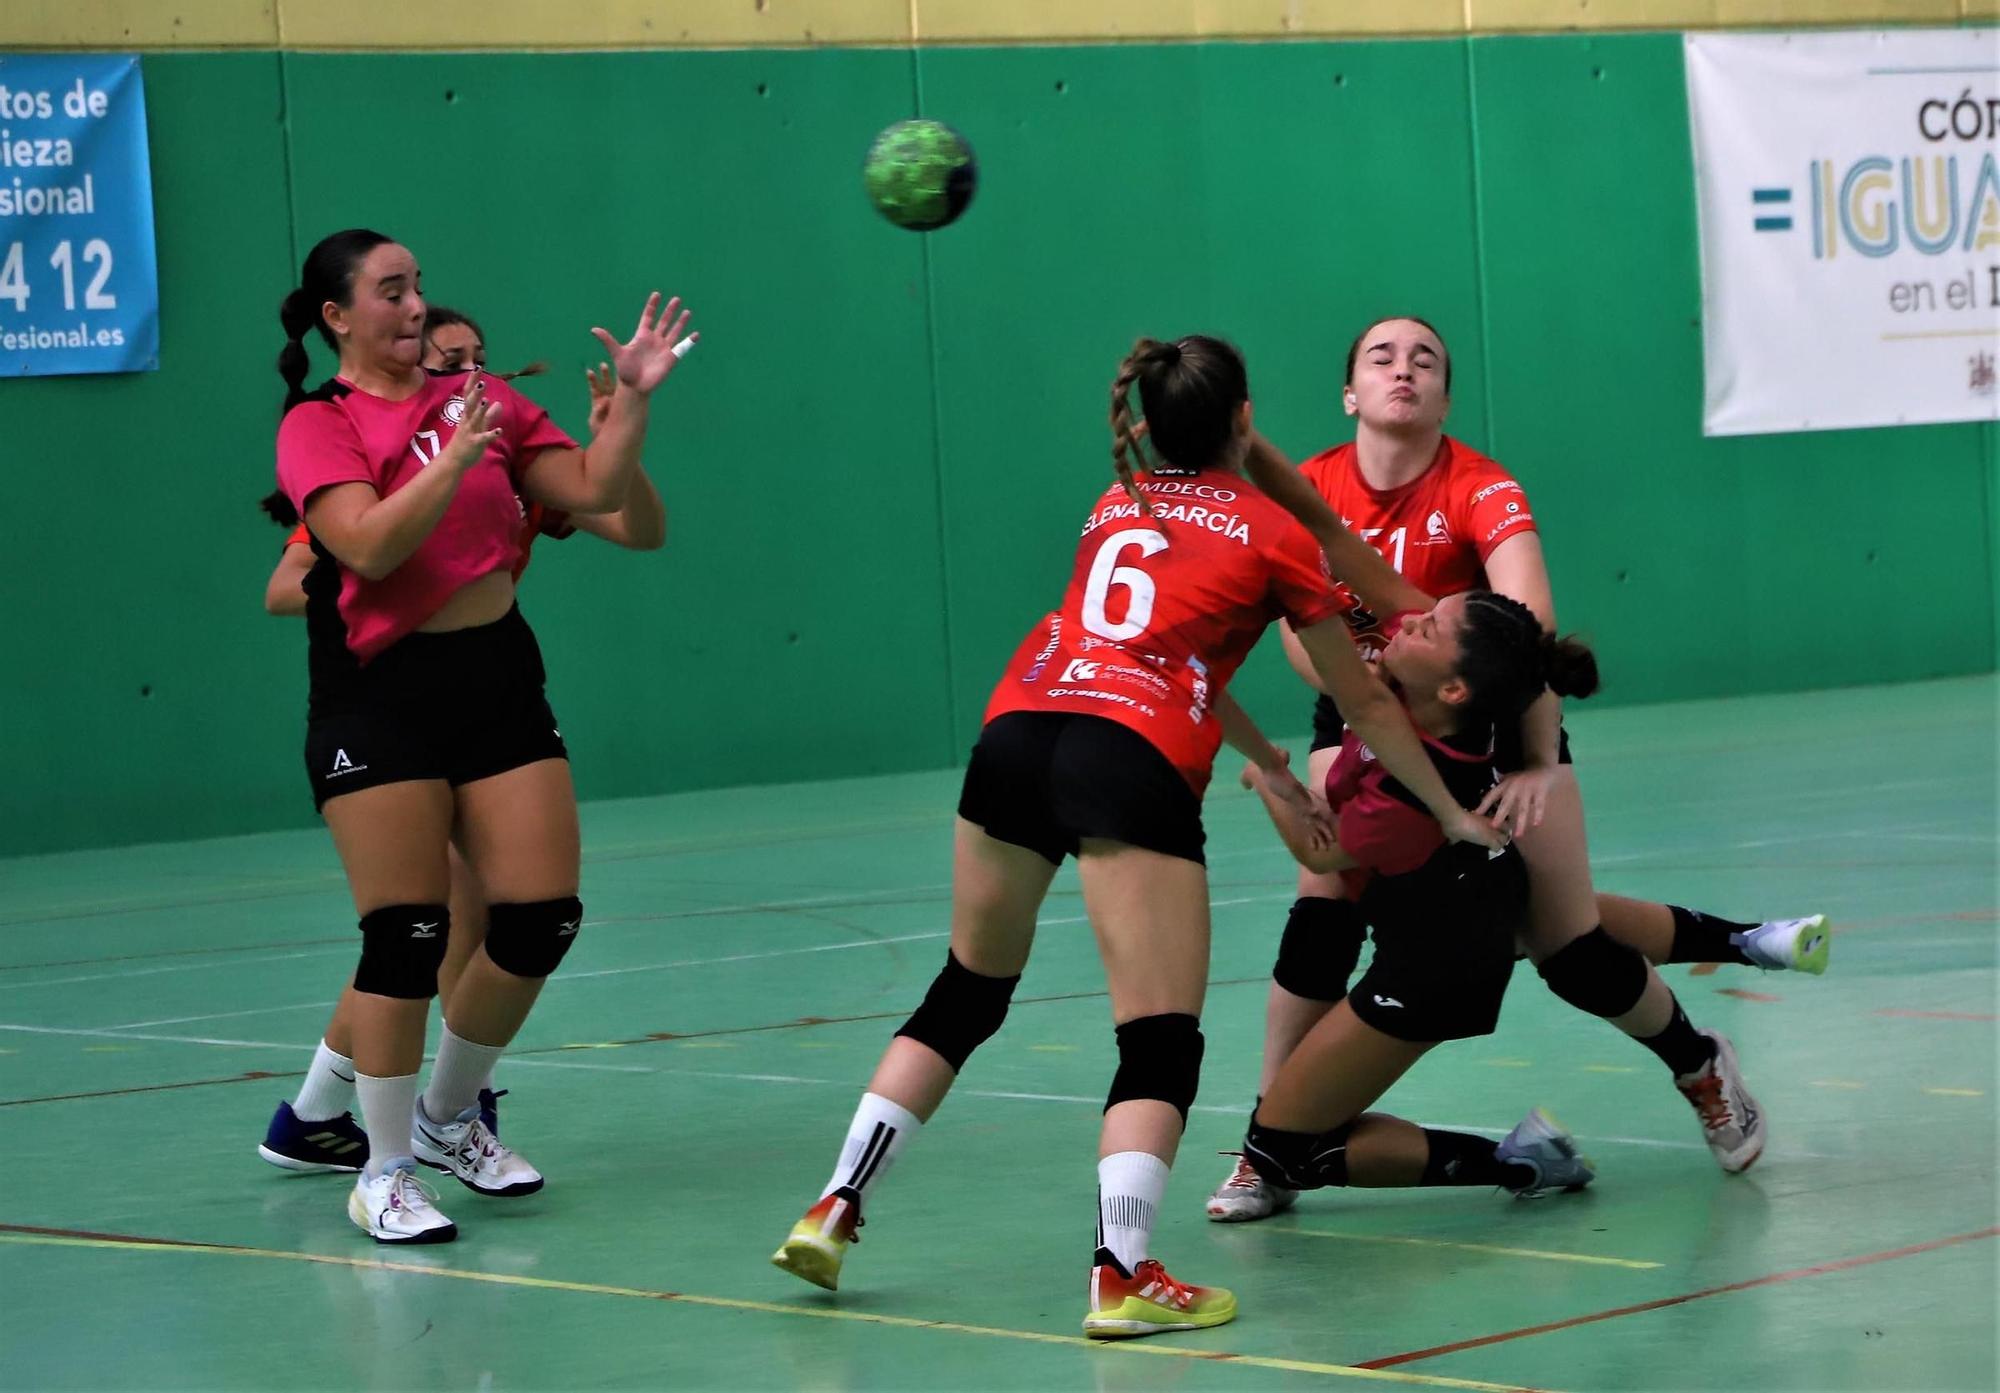 El Adesal - Deza Córdoba de balonmano femenino, en imágenes